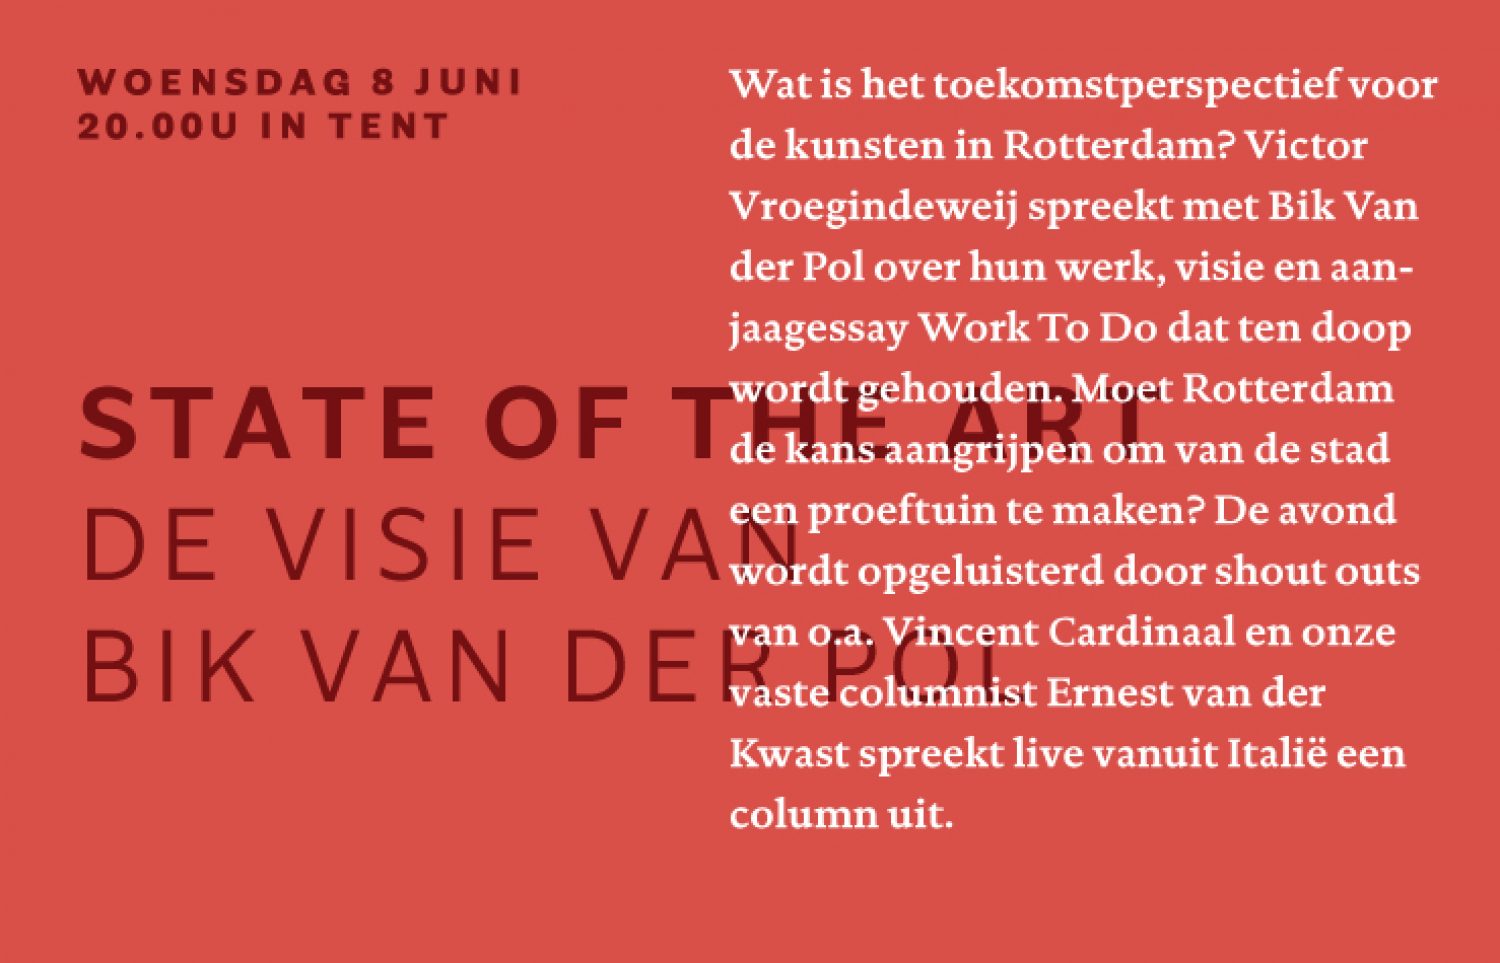 State of the Art: De visie van Bik Van der Pol